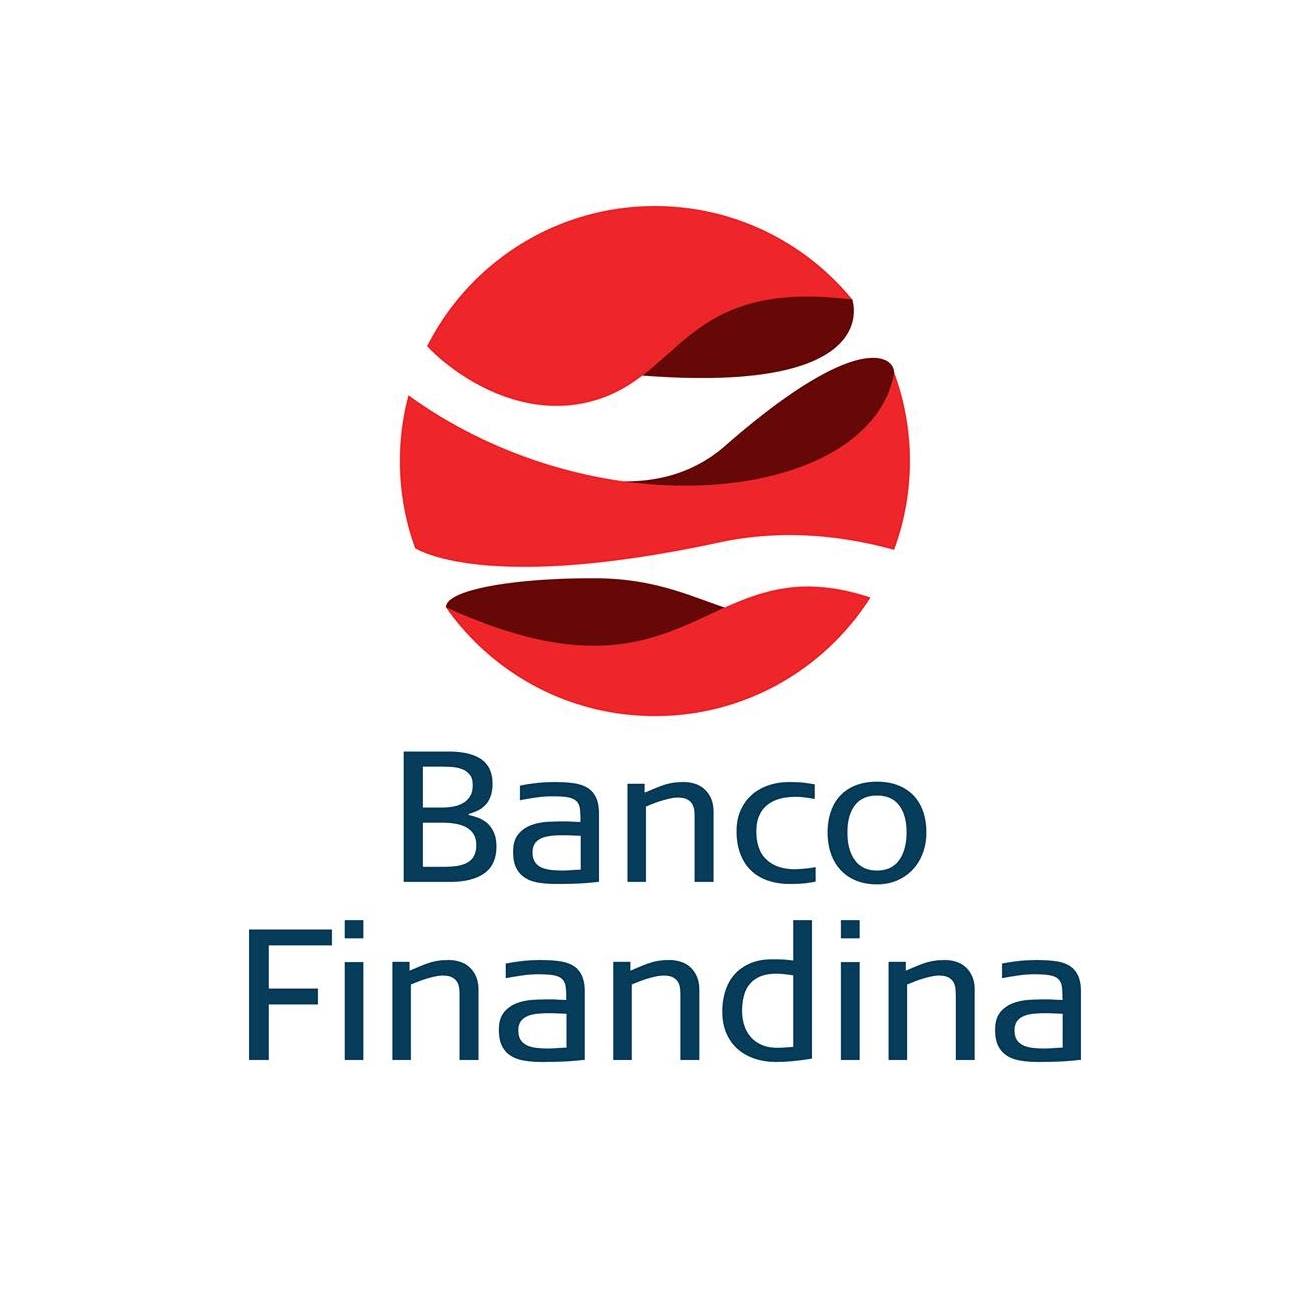 Banco Finandina – Crunchbase cégprofil és finanszírozás